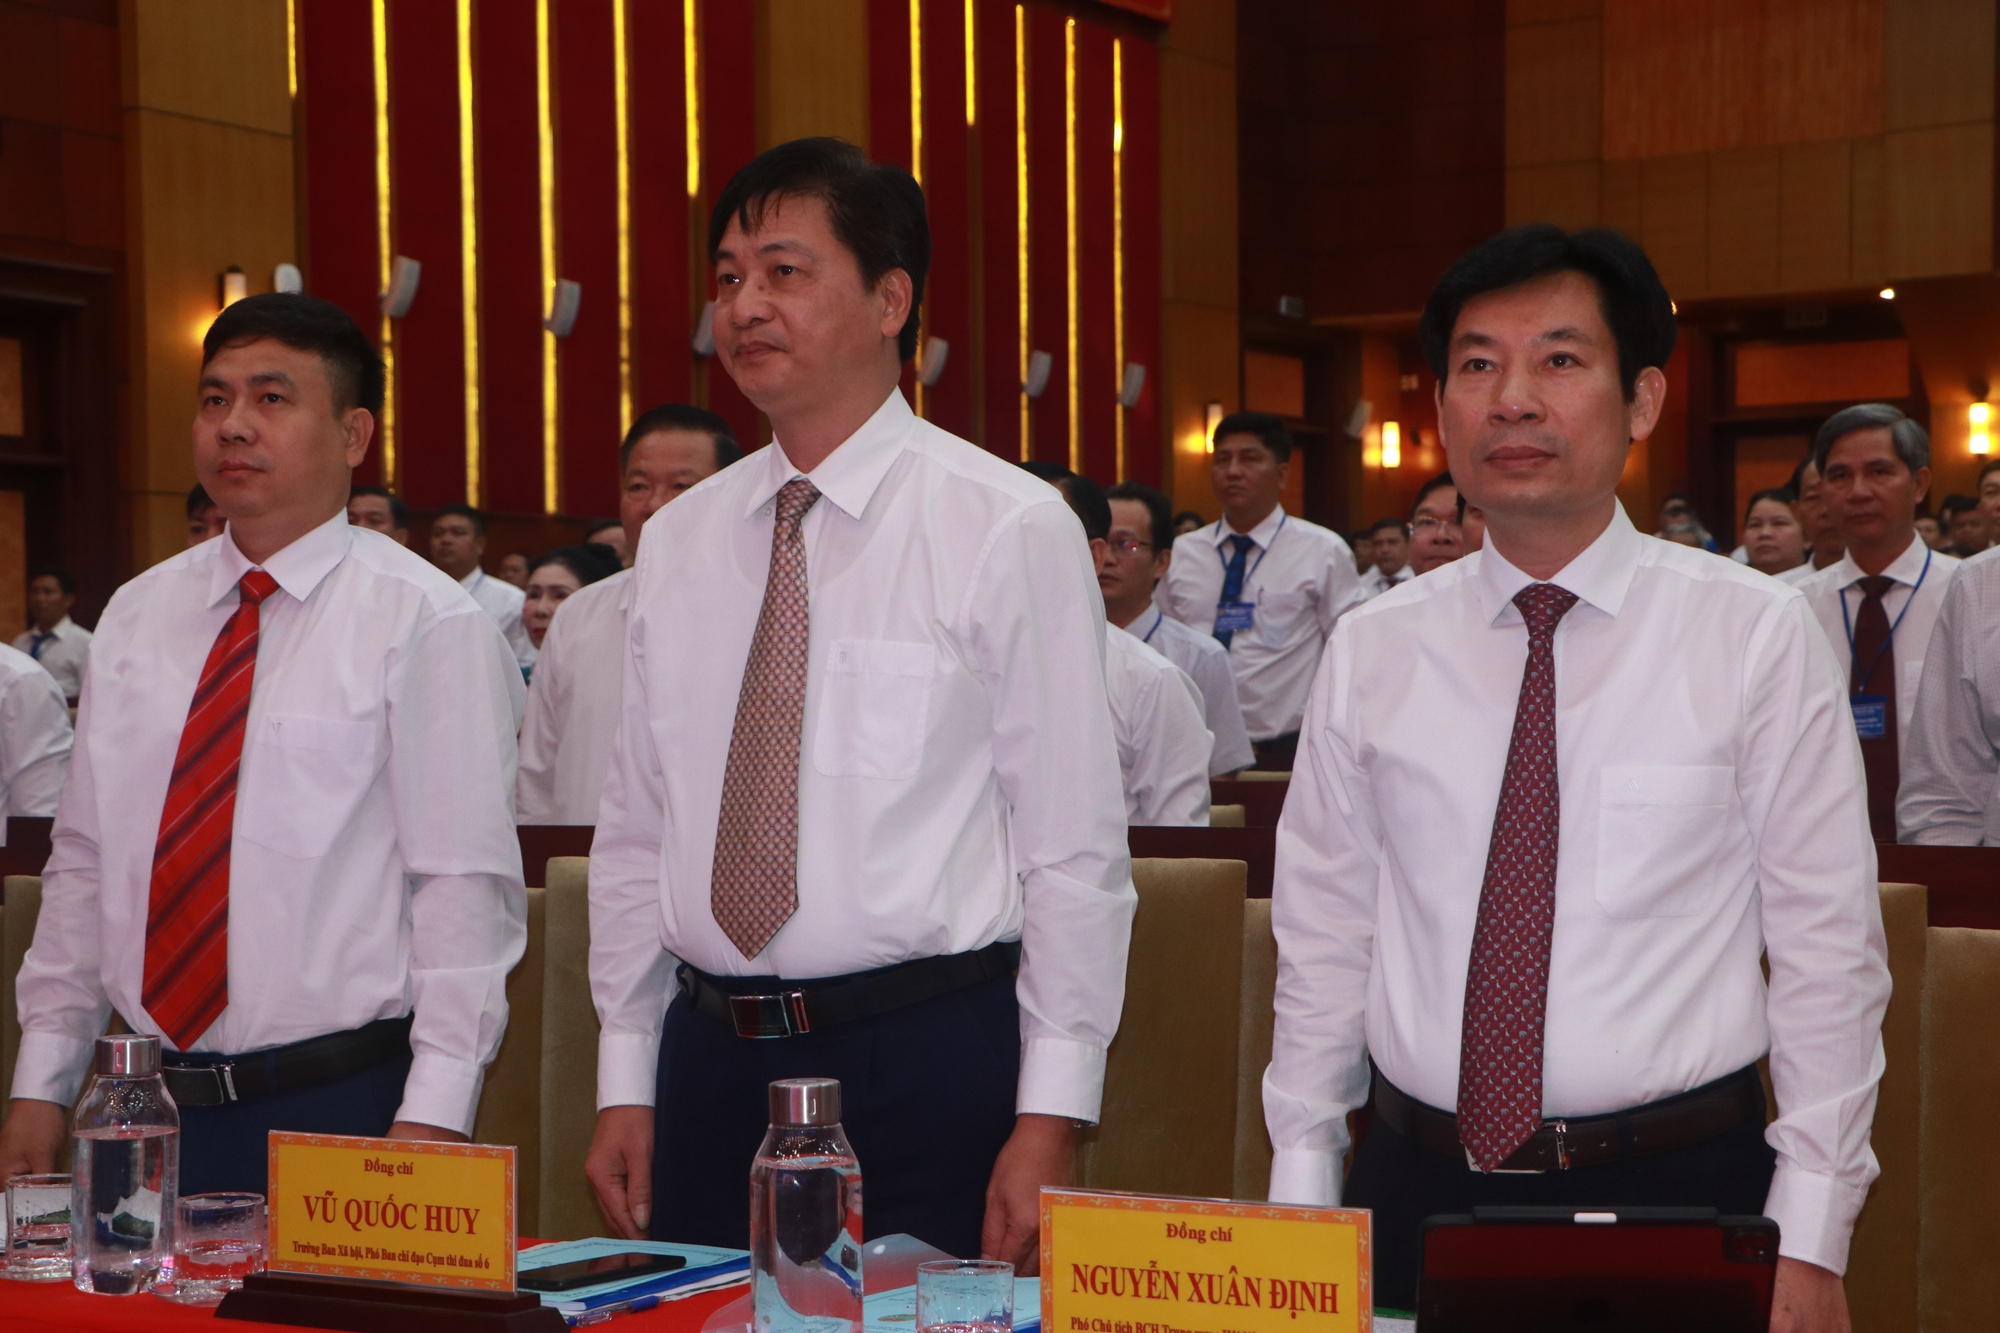 Phó Chủ tịch Hội NDVN Nguyễn Xuân Định dự Đại hội đại biểu Hội Nông dân tỉnh Tây Ninh - Ảnh 1.